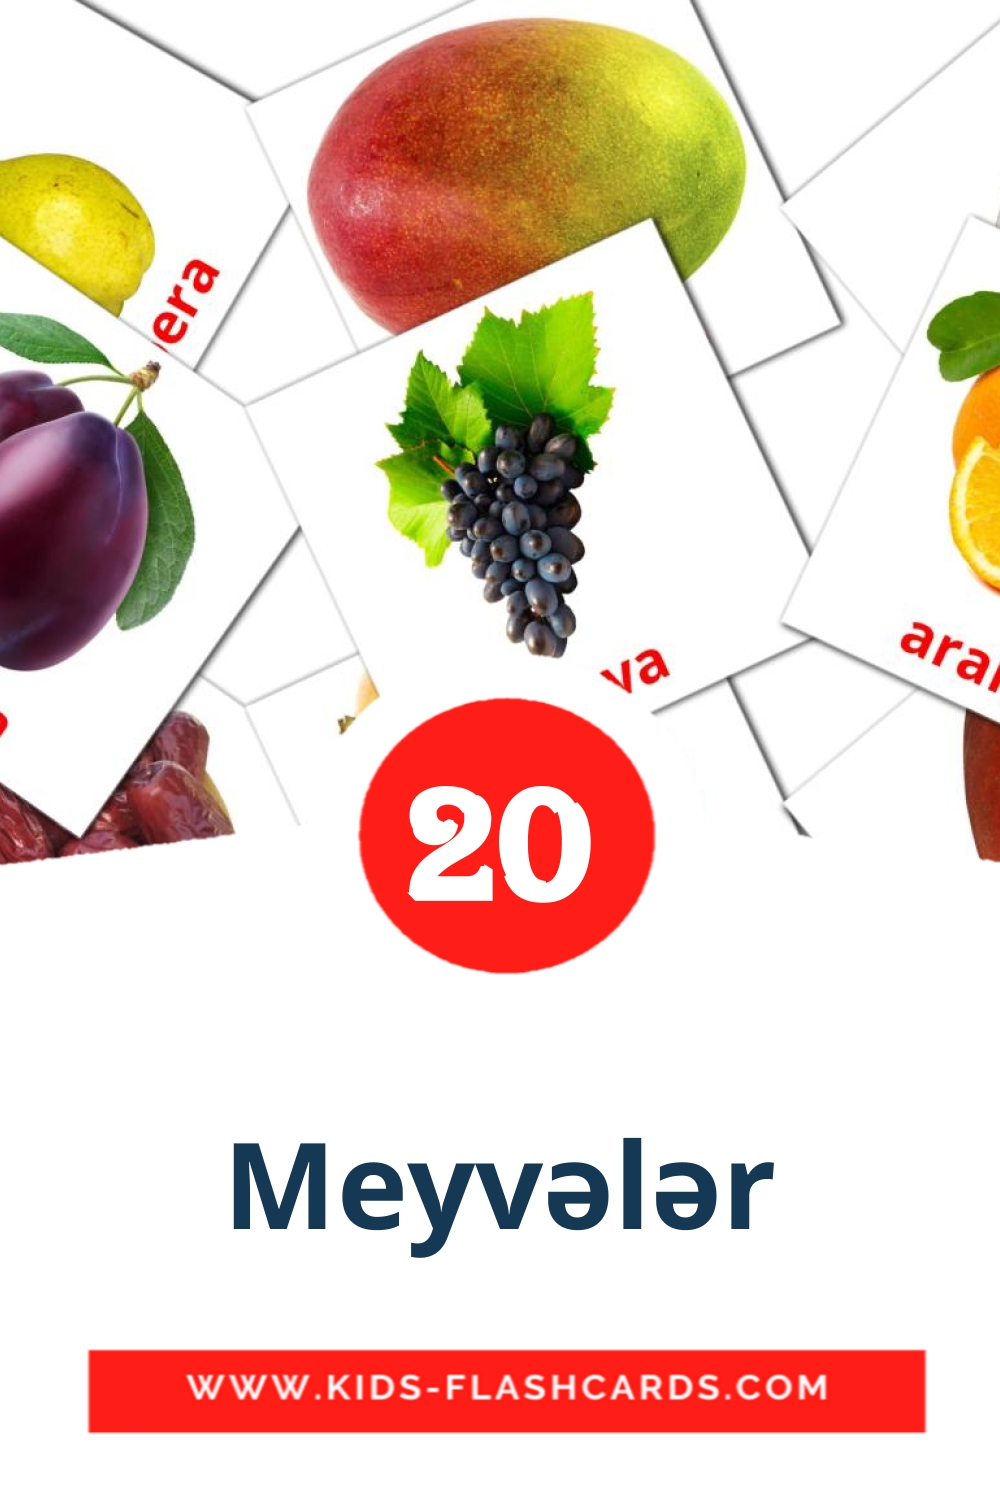 20 tarjetas didacticas de Meyvələr para el jardín de infancia en azerbaiyano